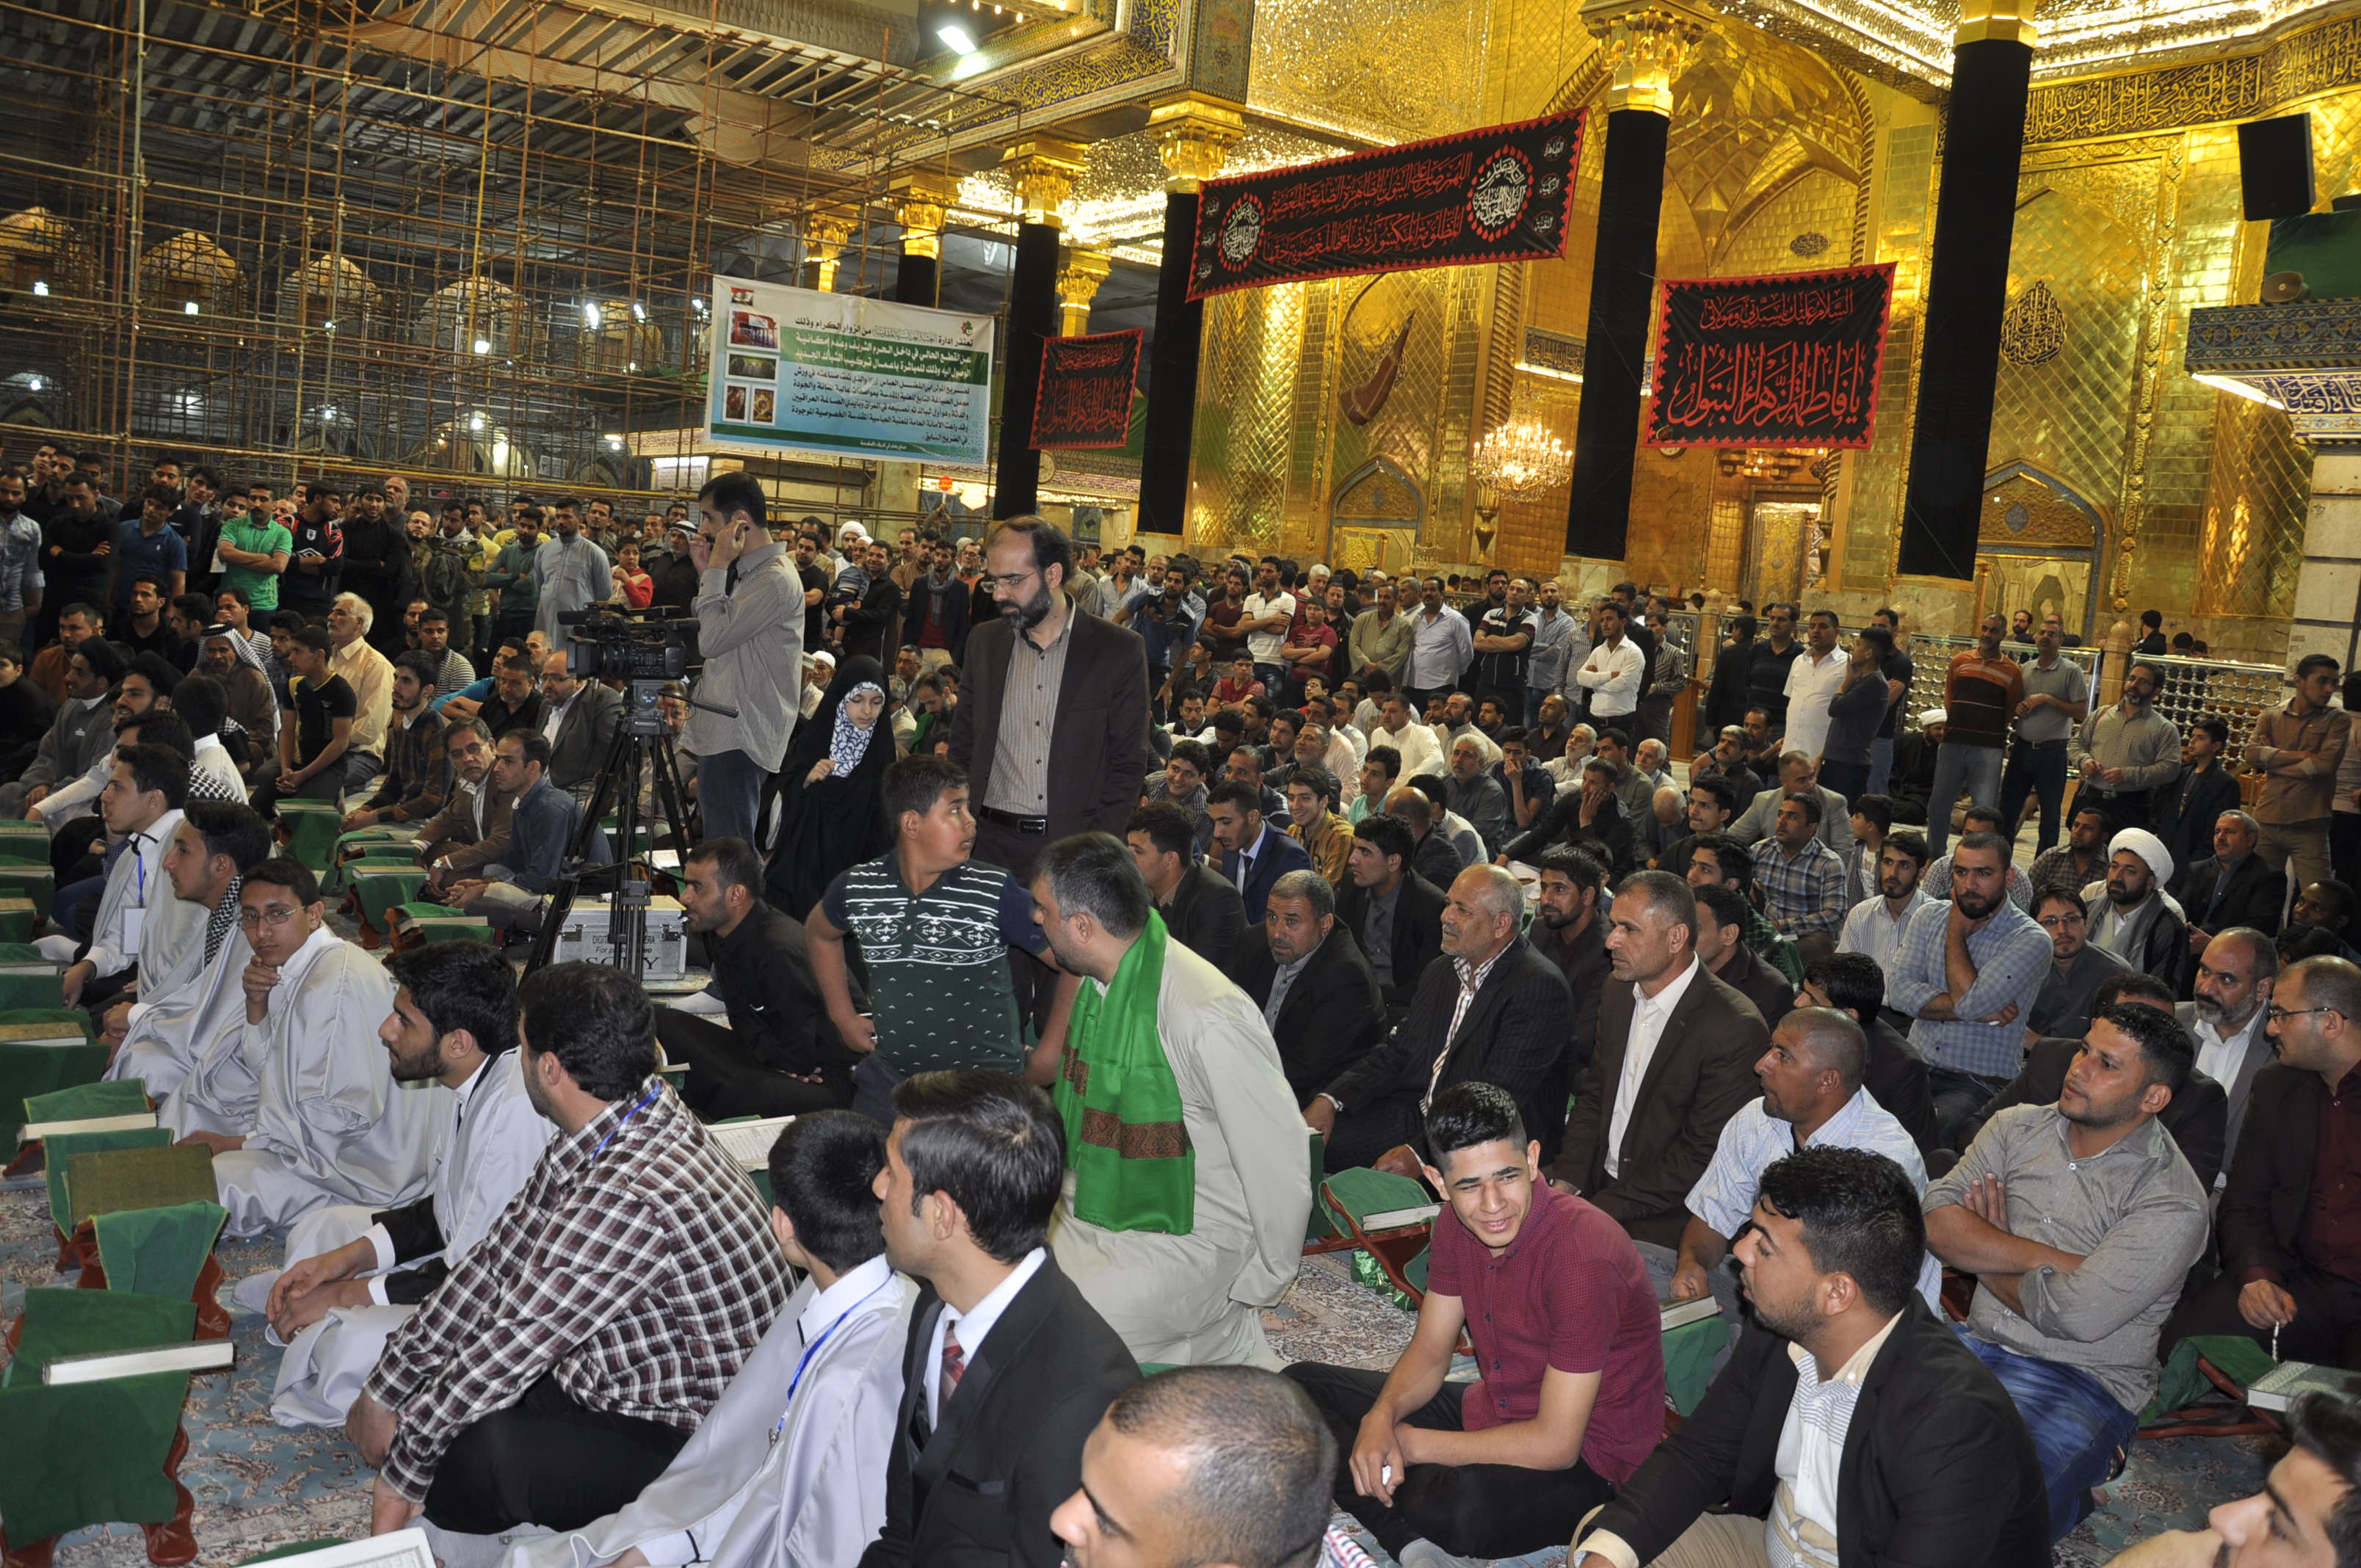 معهد القرآن الكريم يقيم أمسية مباركة لنخبة من قرّاء مشروع التلاوة الوطني في إيران